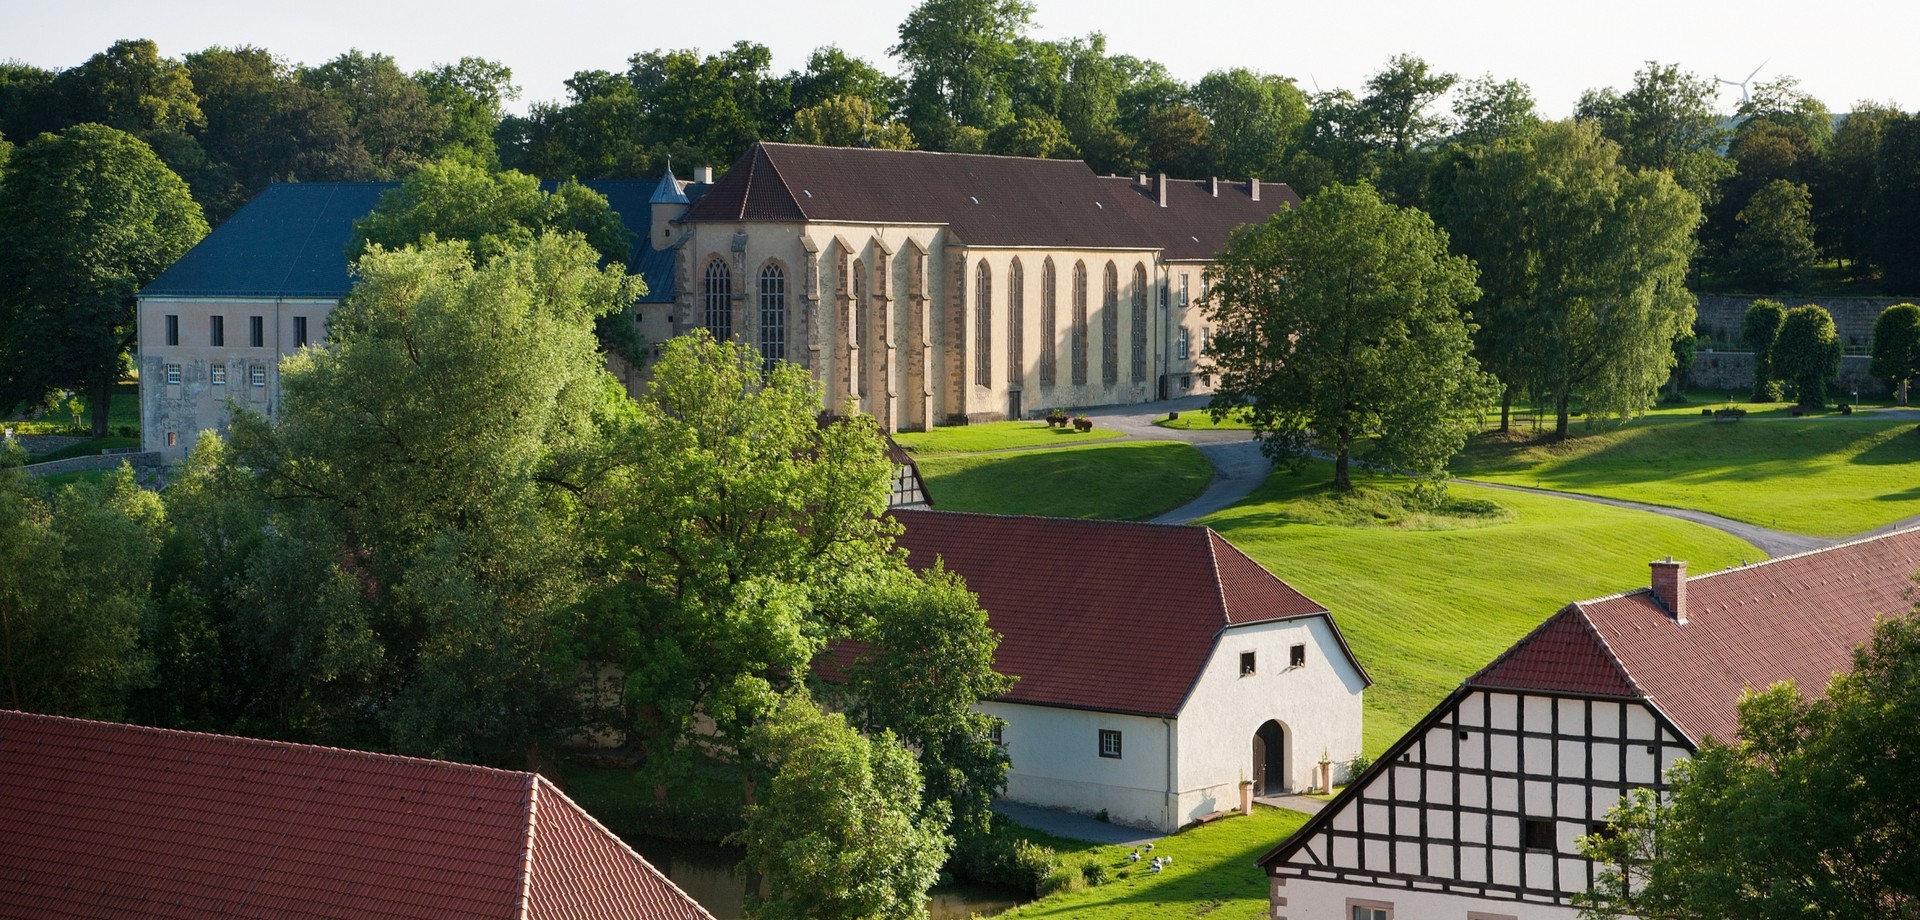 Blick auf die Klosteranlage mit Kirche, Scheunen und Wiesen.